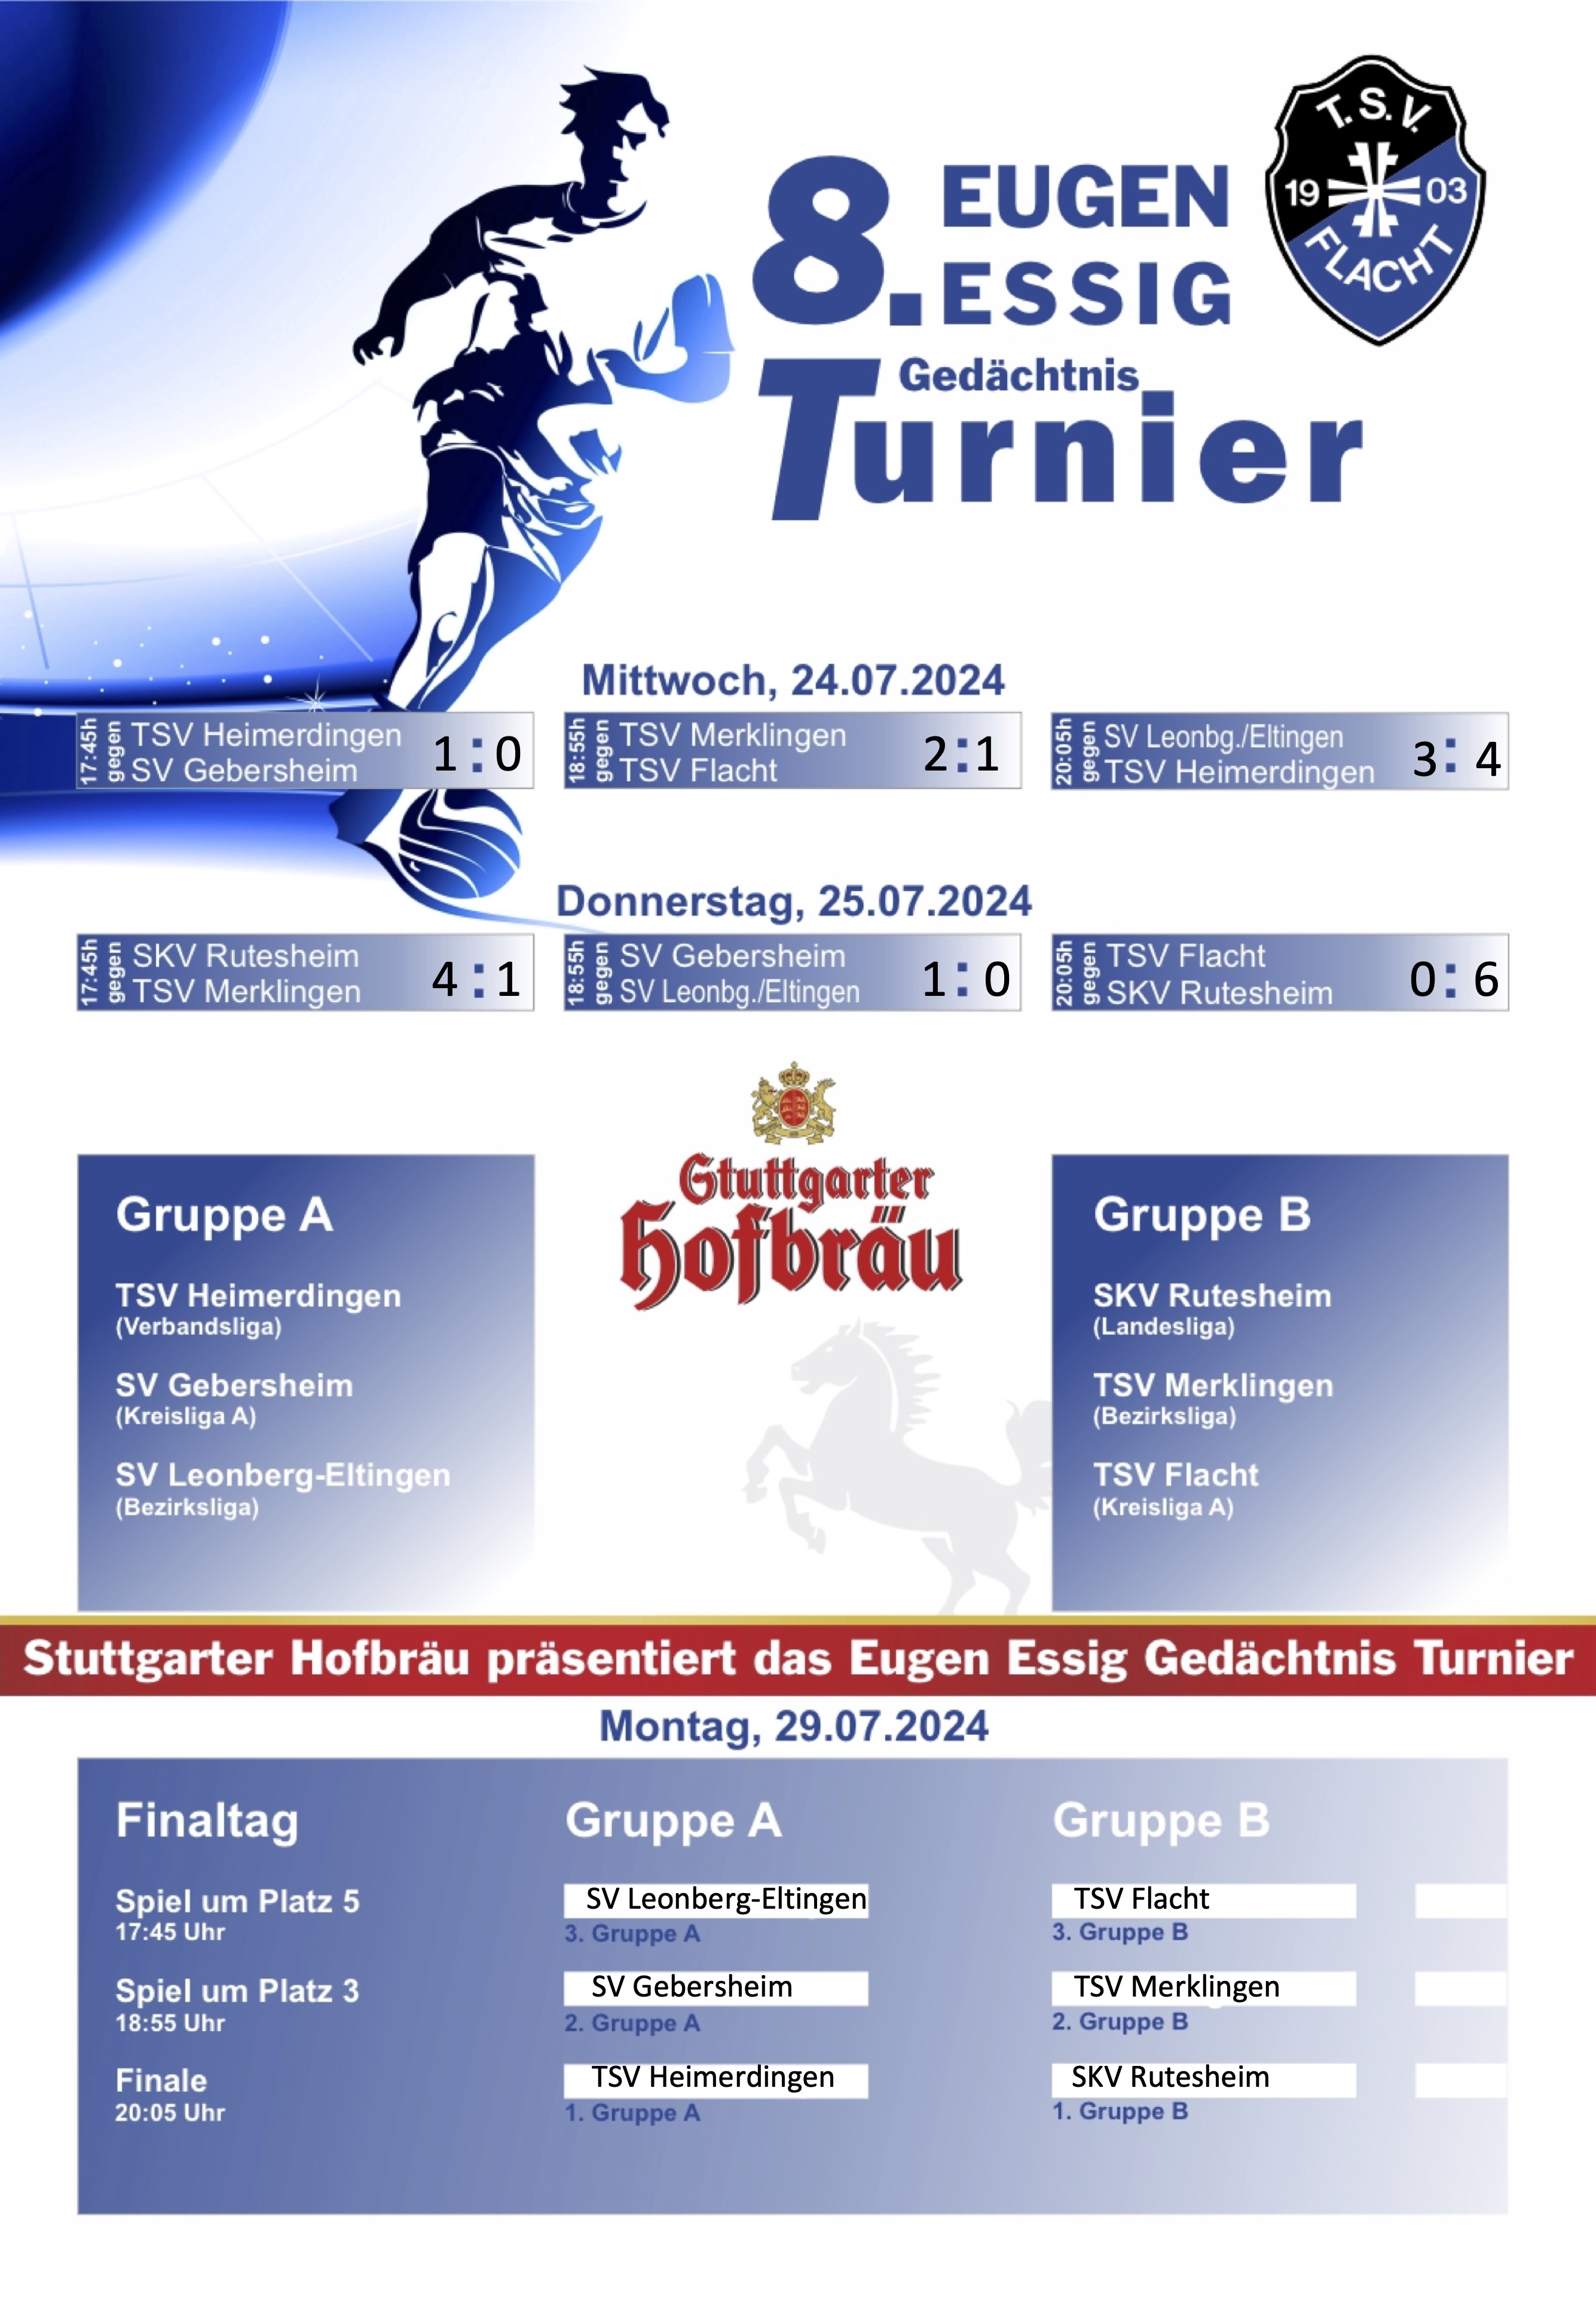 Stuttgarter Hofbräu präsentiert das 8. Eugen-Essig-Gedächtnis-Turnier 2024 | 2. Turniertag